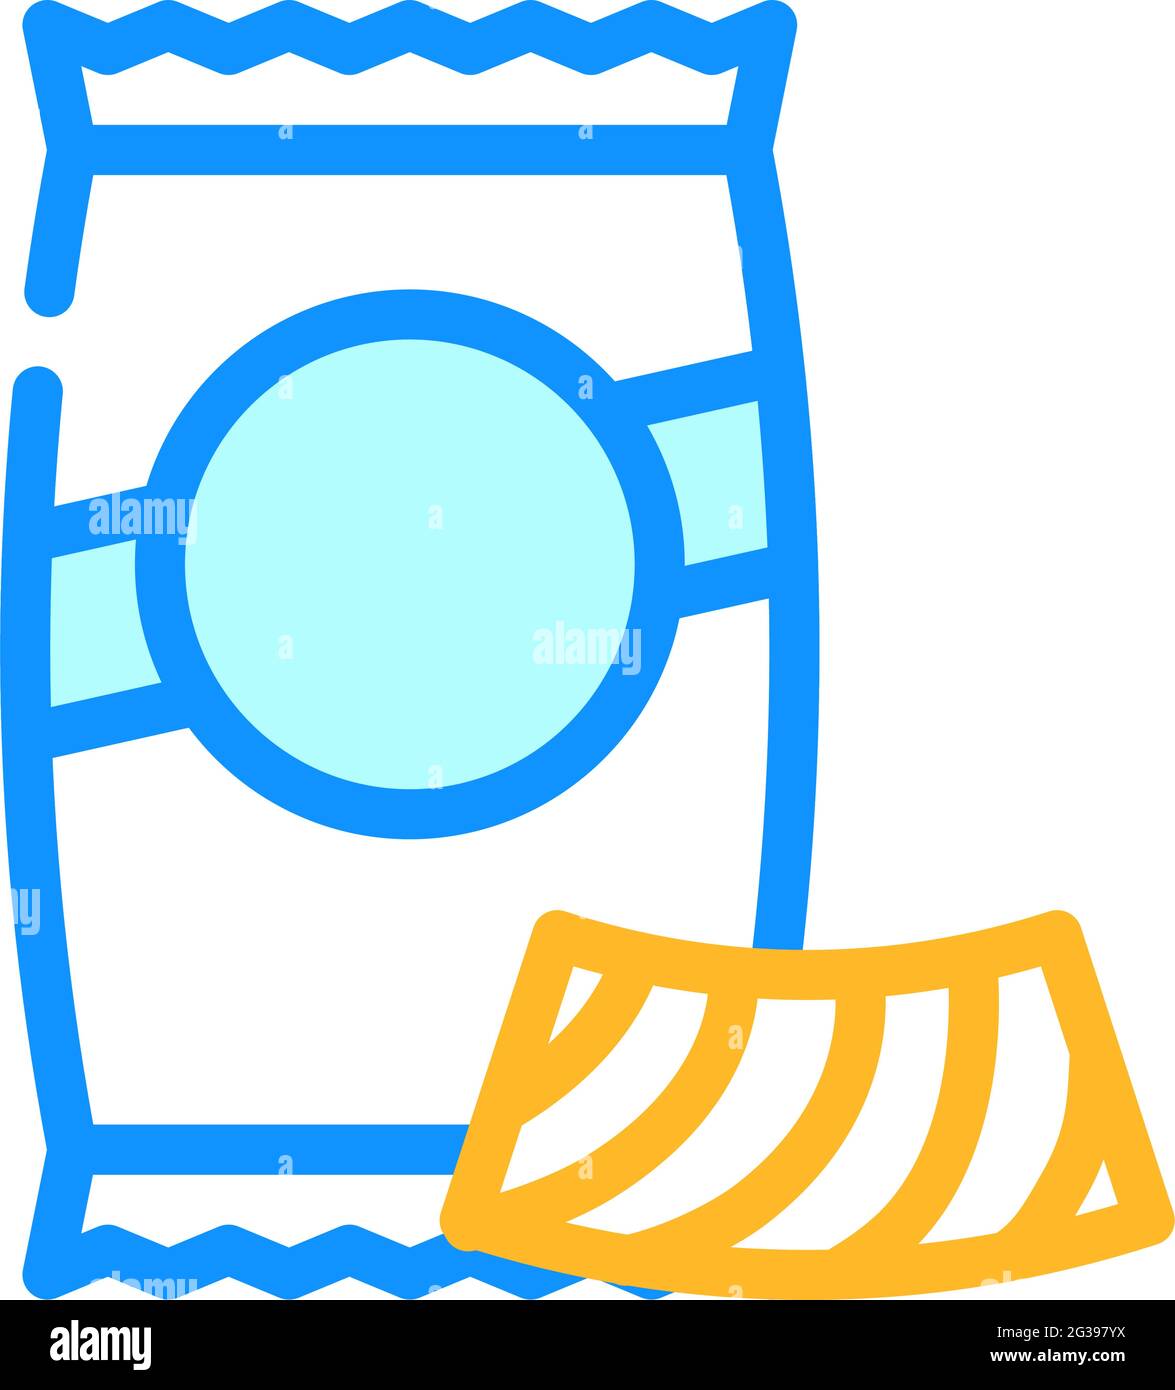 riccioli pasta color icon vector illustration Stock Vector